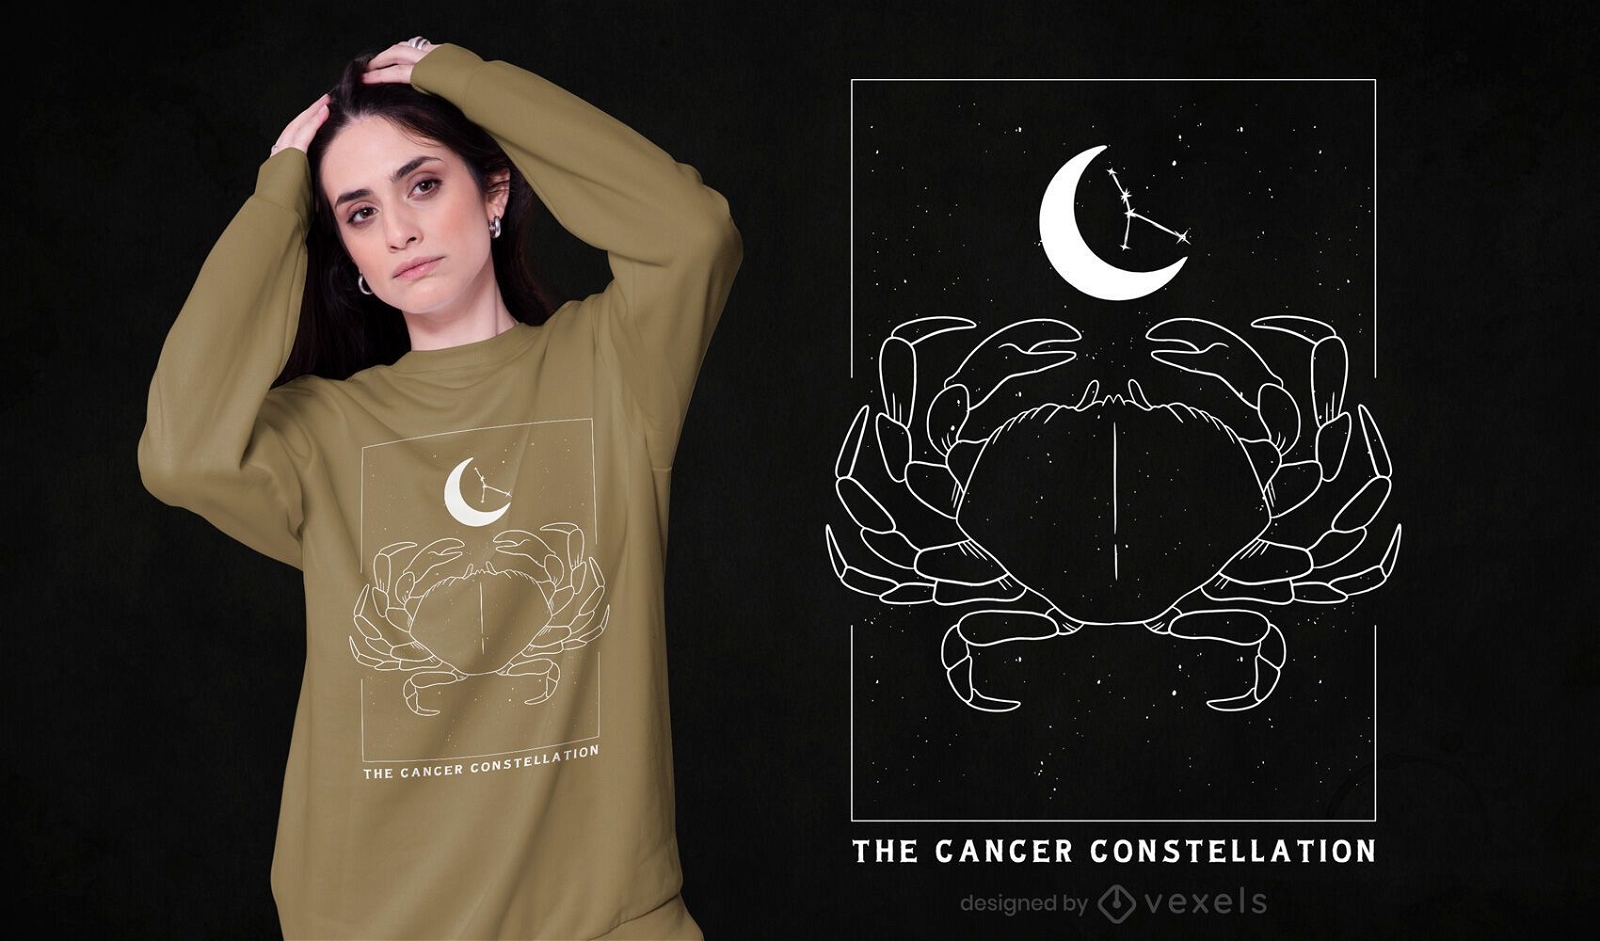 Cancer constellation t-shirt design